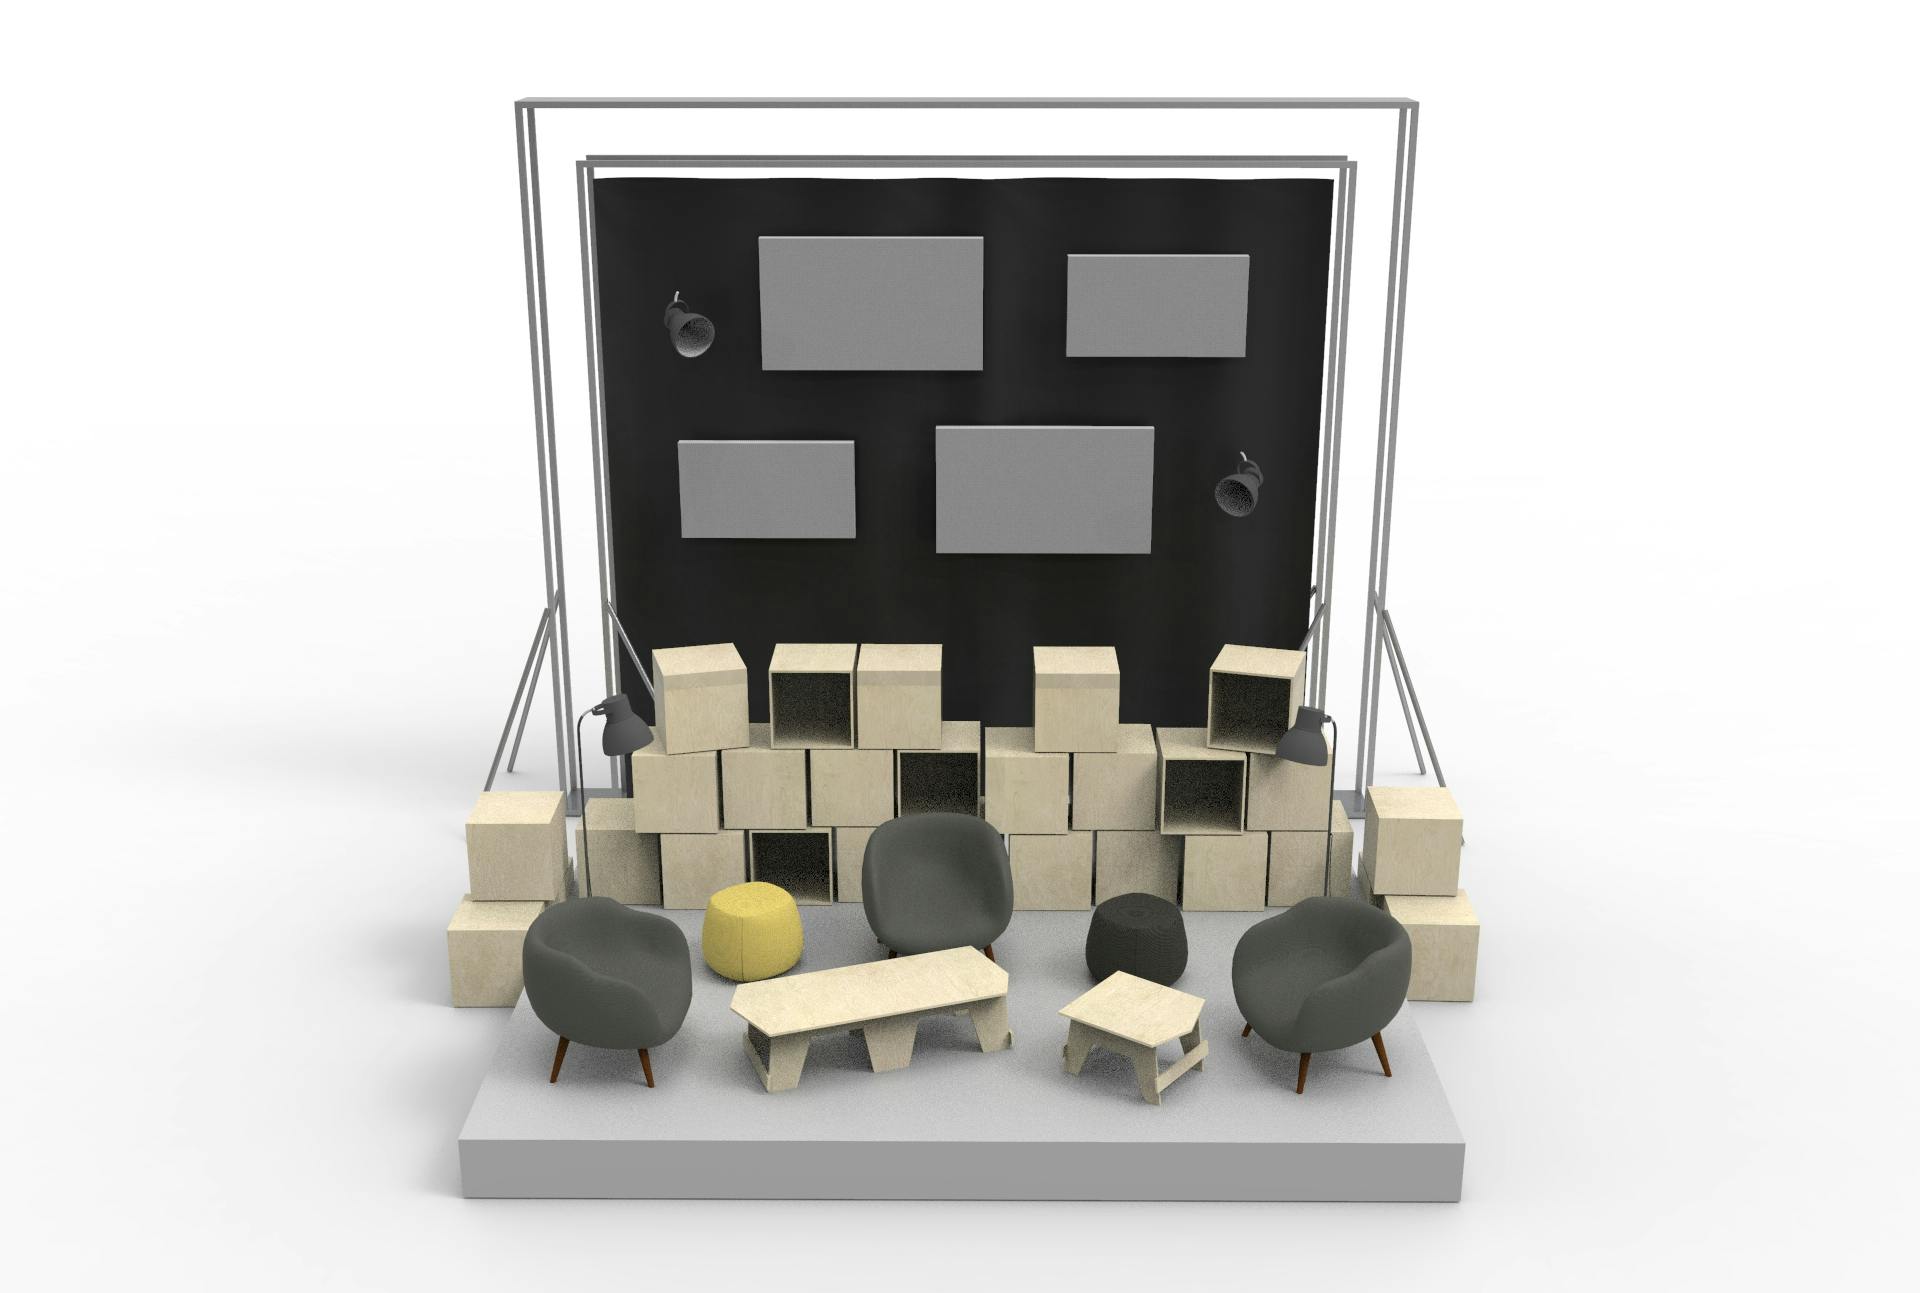 Modélisation 3D de l'aménagement d'espace intérieur pour l'événement de la Nantes Digital Week 2020, vue de face.